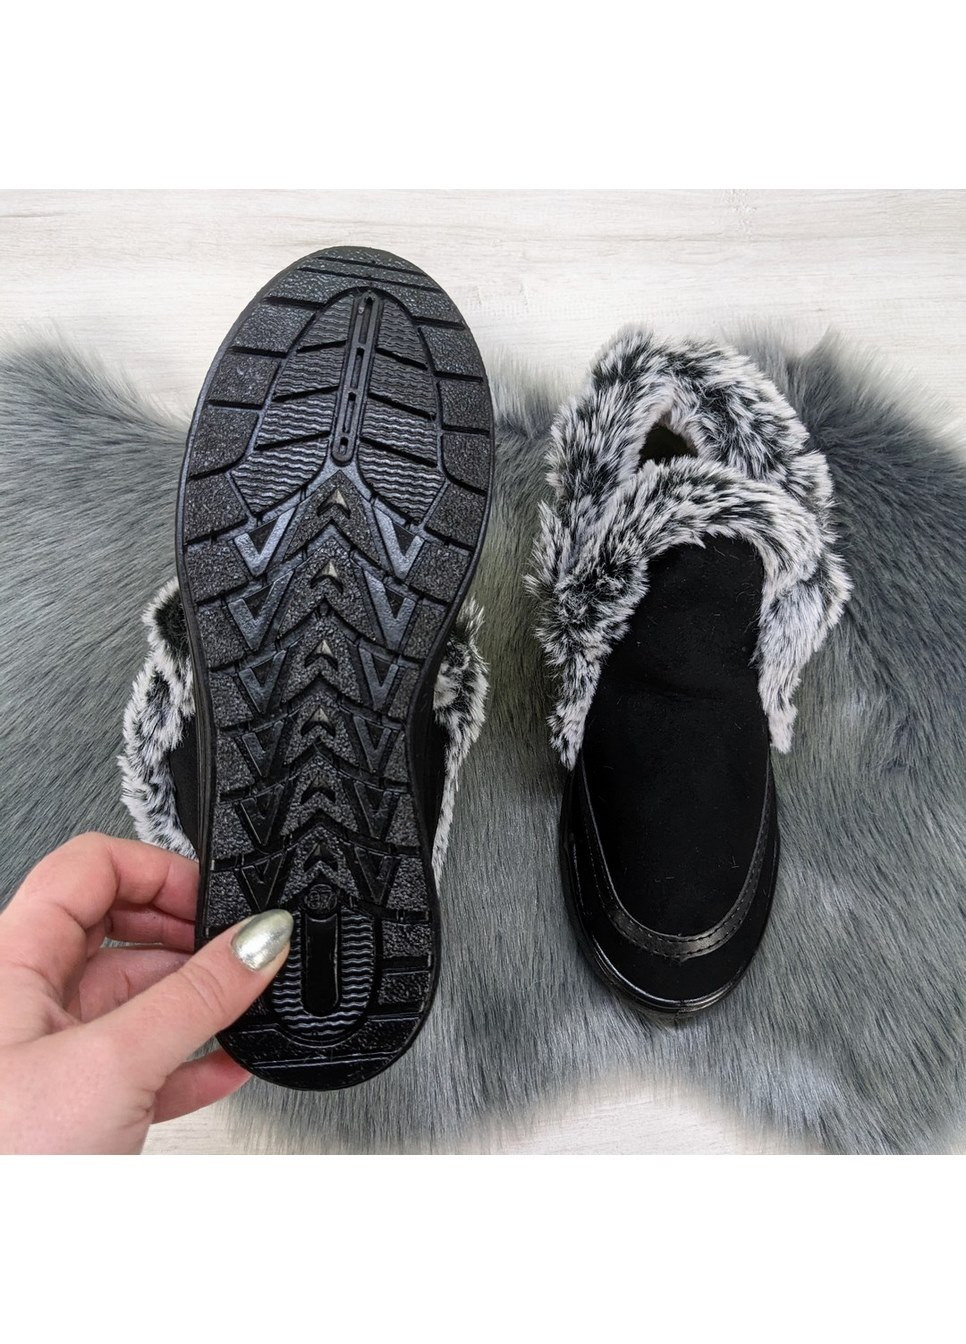 Зимние ботинки женские зимние черные замшевые Litma из искусственной замши